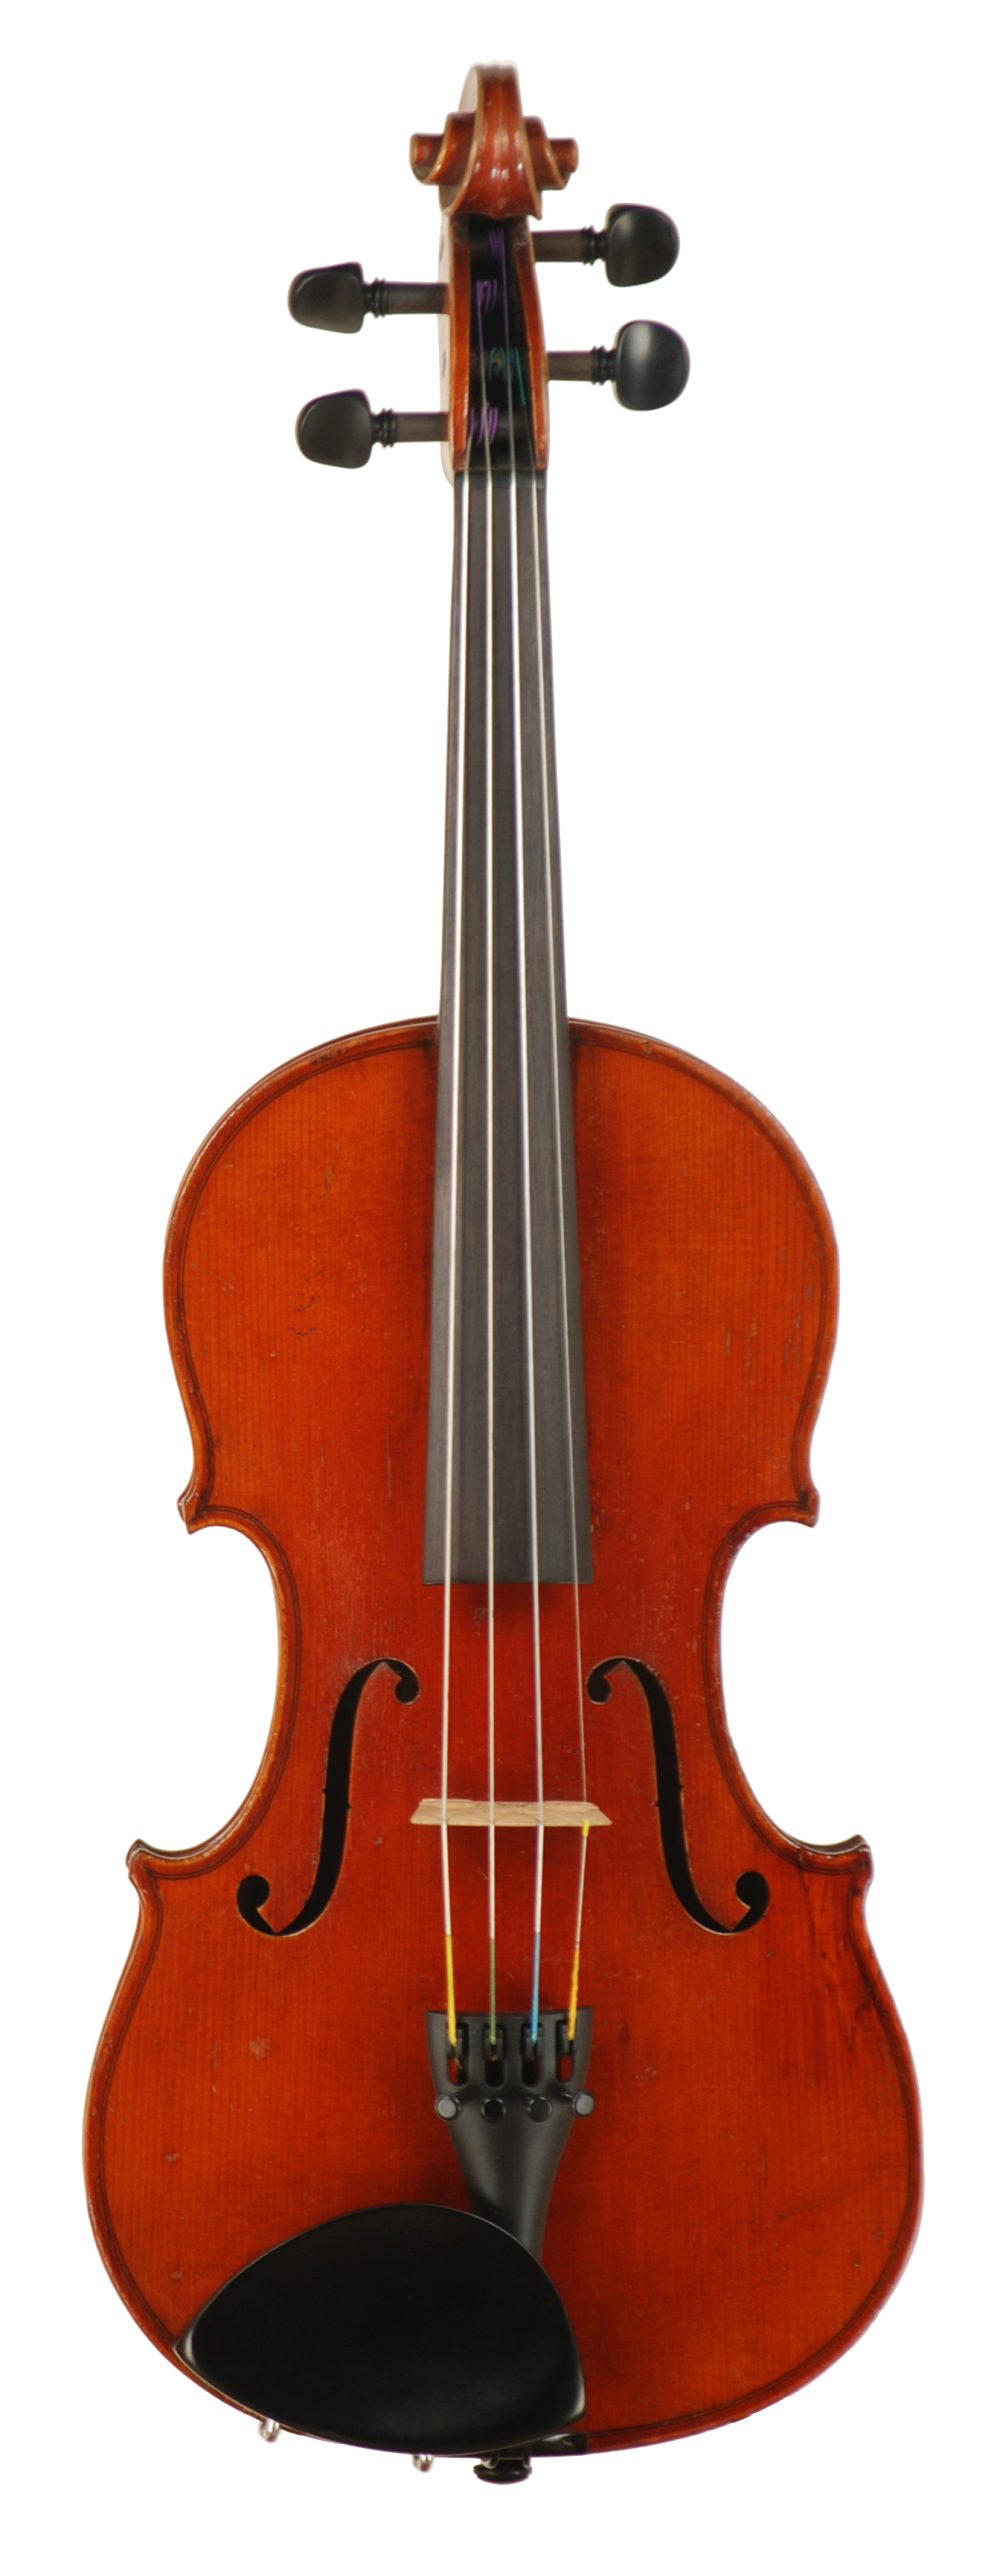 Heinrich E. Heberlein – Trade Violin, circa 1921 / Copy of an